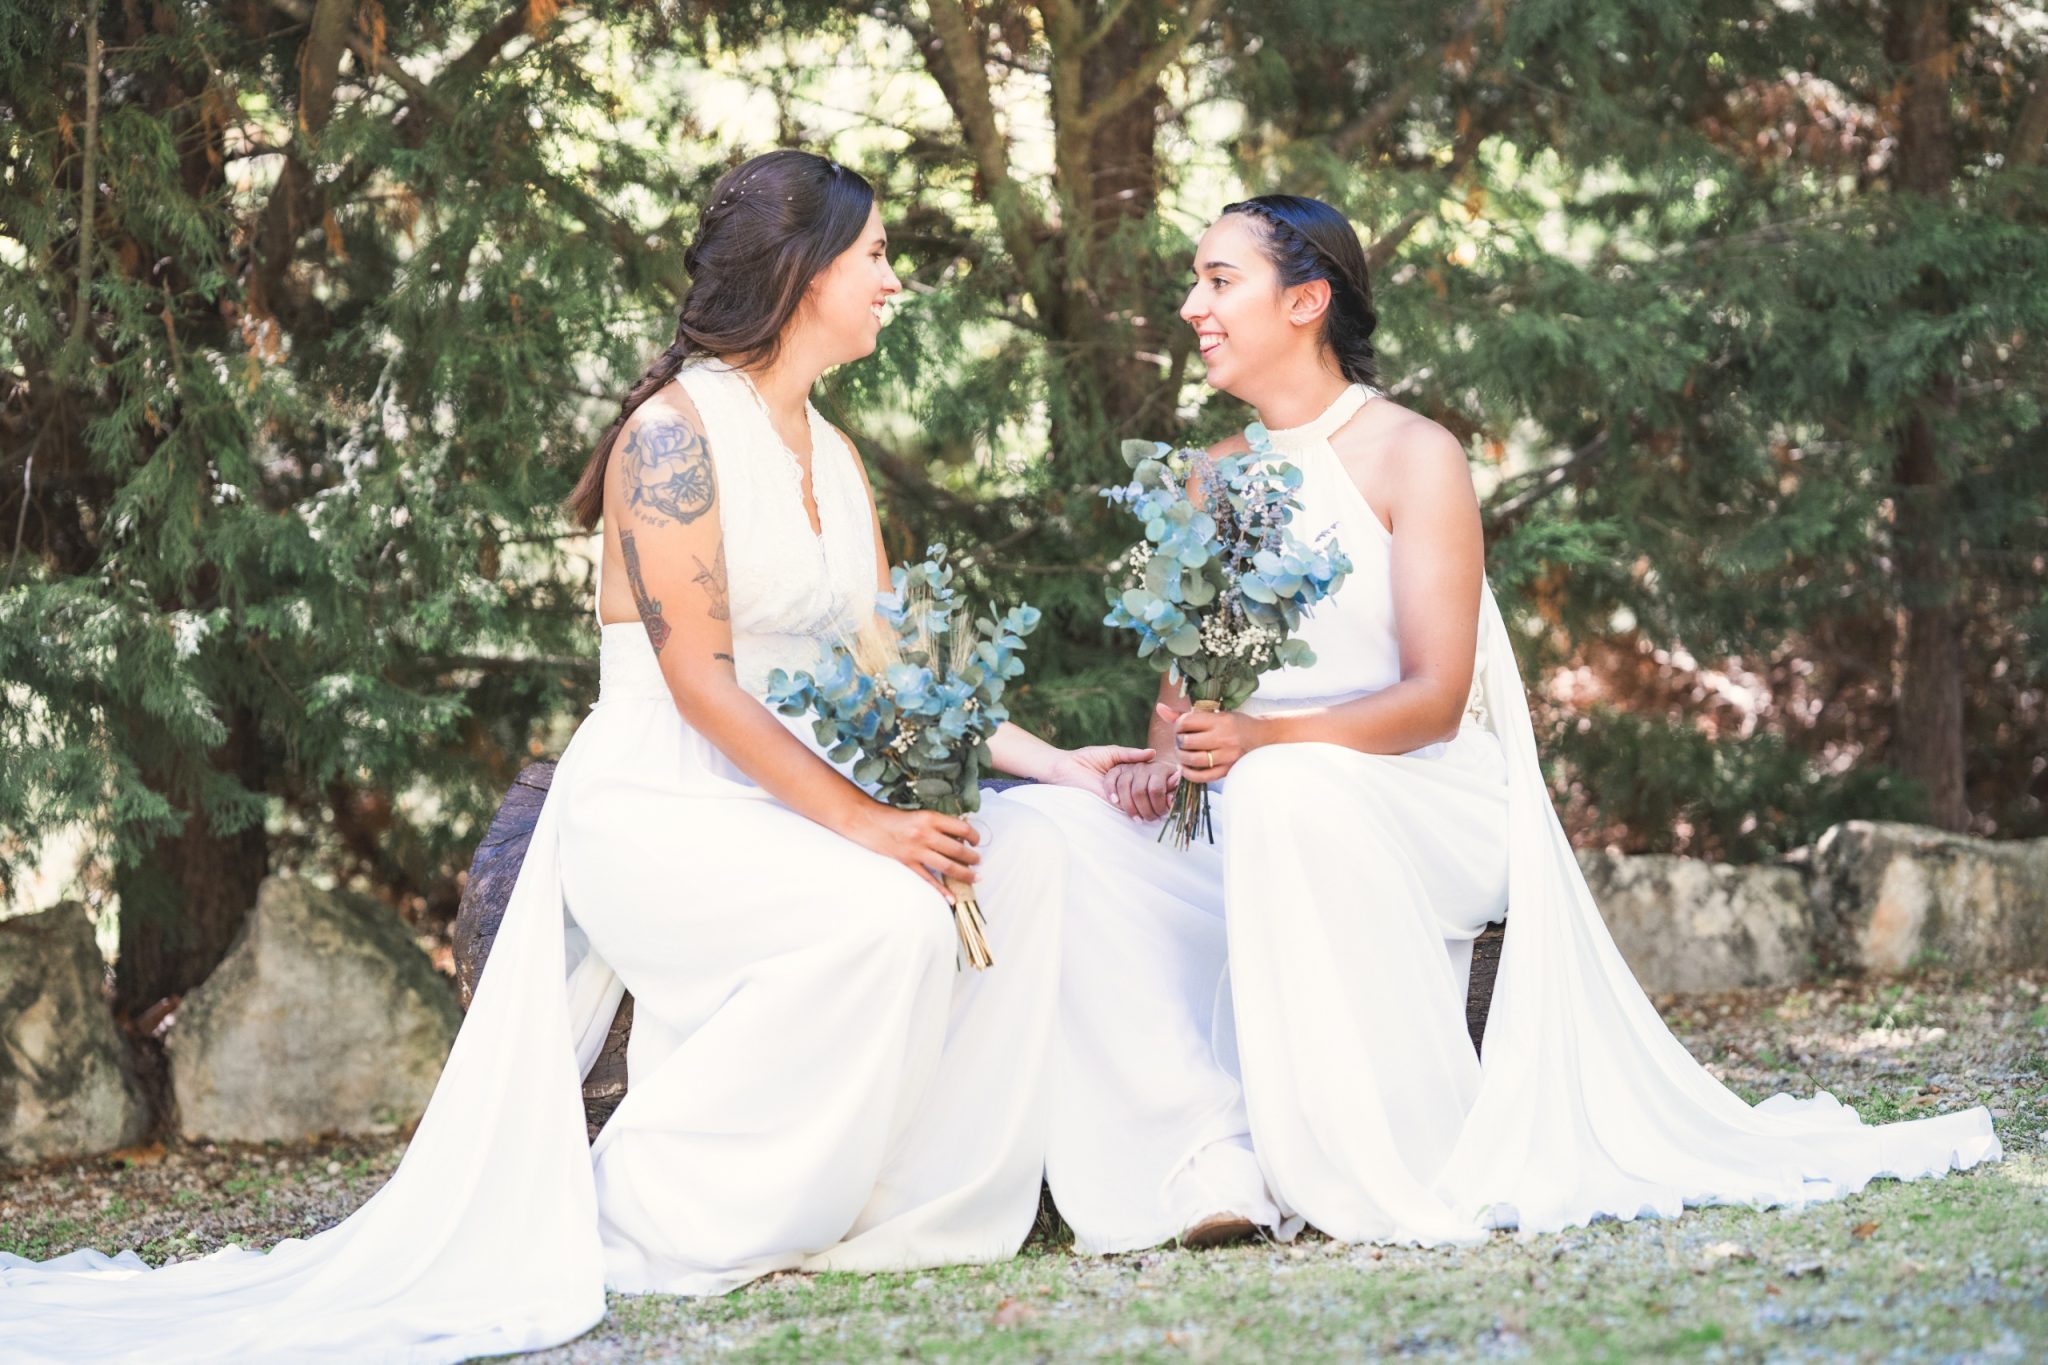 Dos novias sentadas una al lado de la otra, sosteniendo ramos y compartiendo una mirada afectuosa.